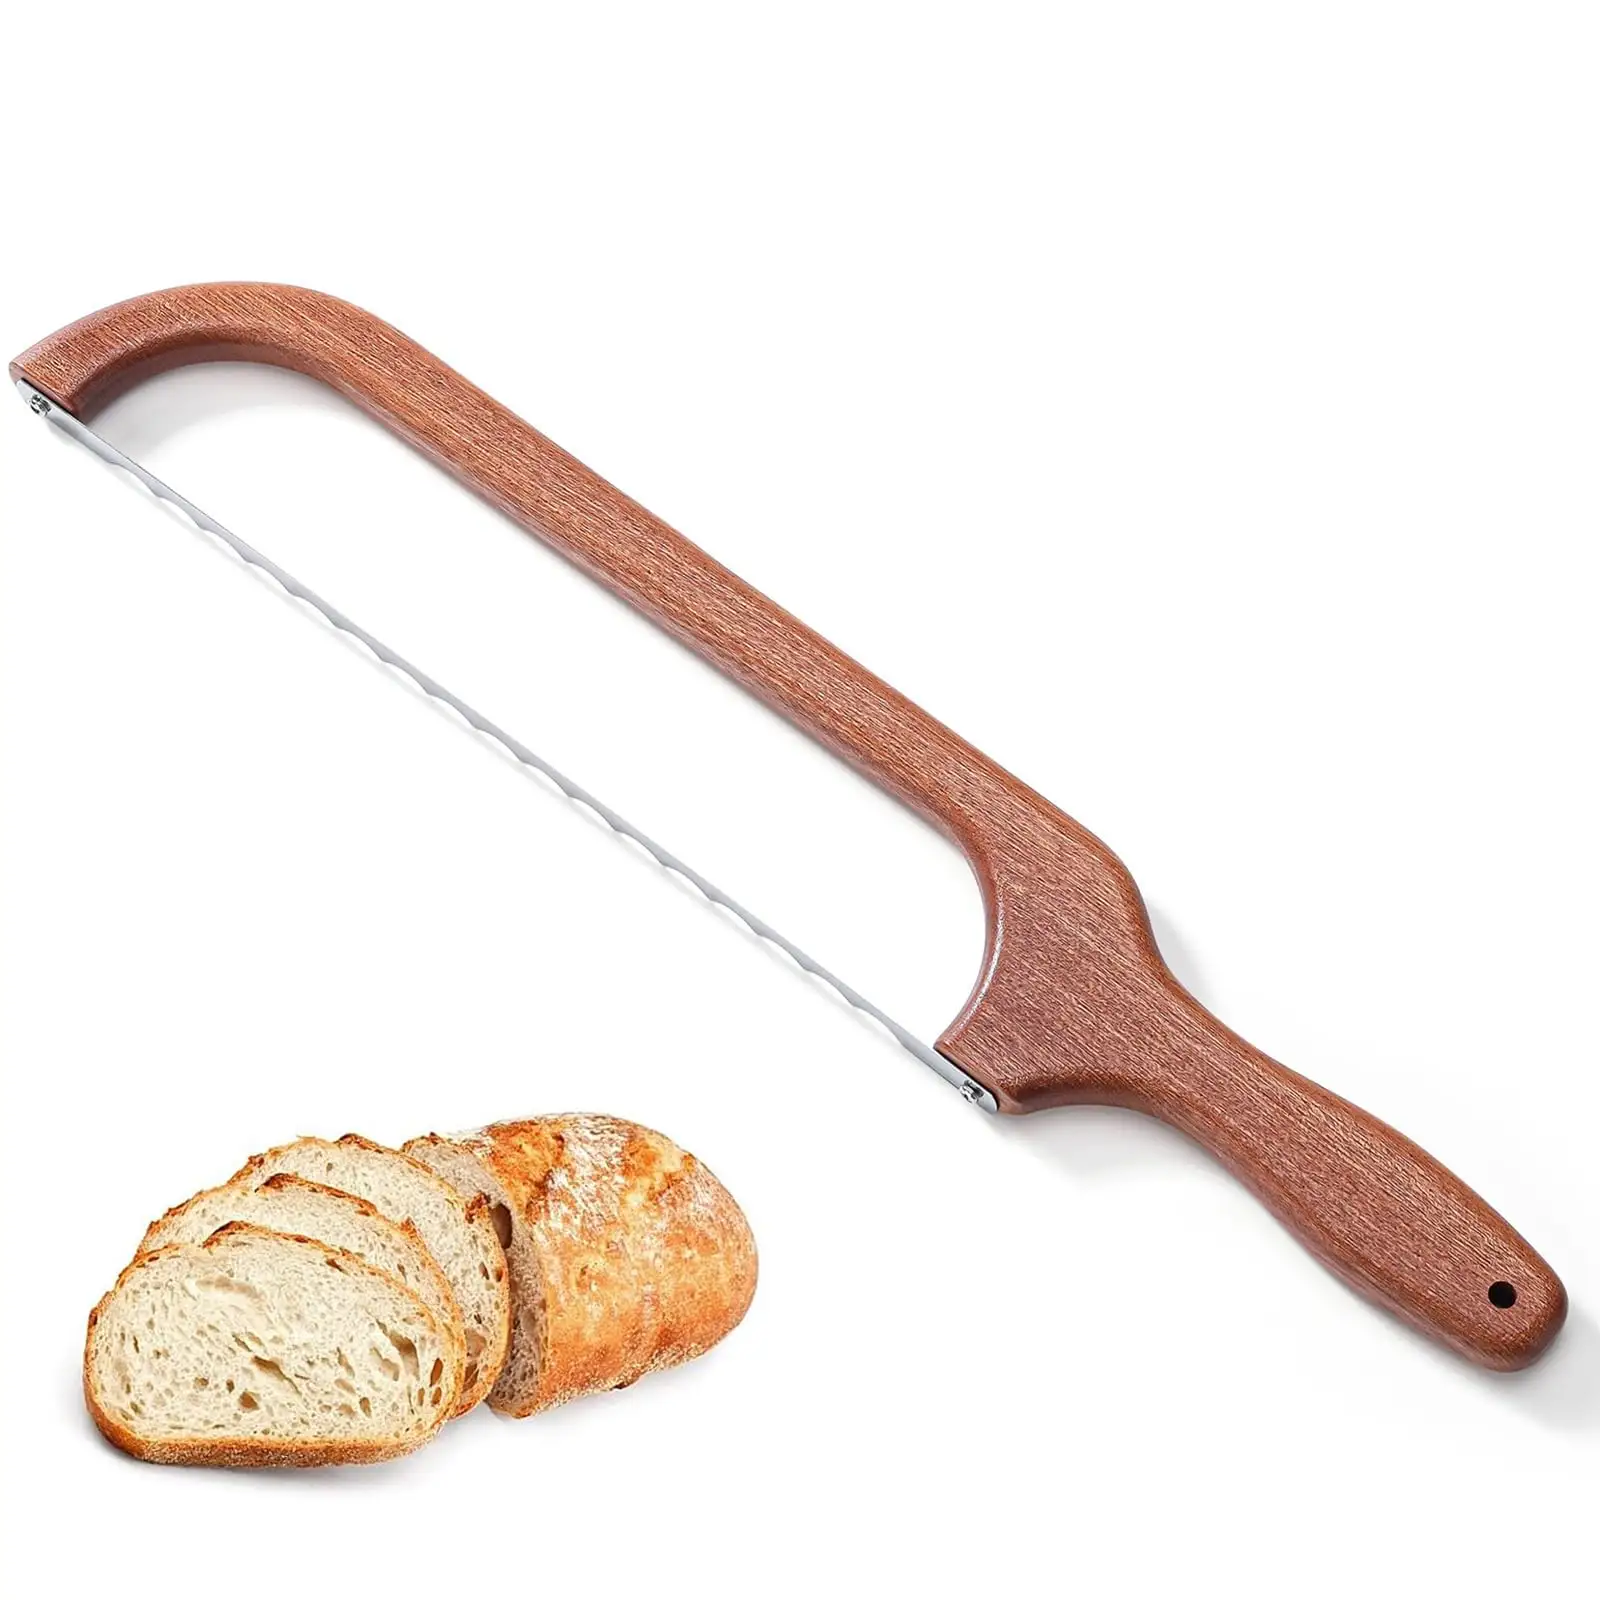 Faca de madeira para pão com alça serrilhada de aço inoxidável, faca para pão e bagel, cortador de fermento com cabo de madeira